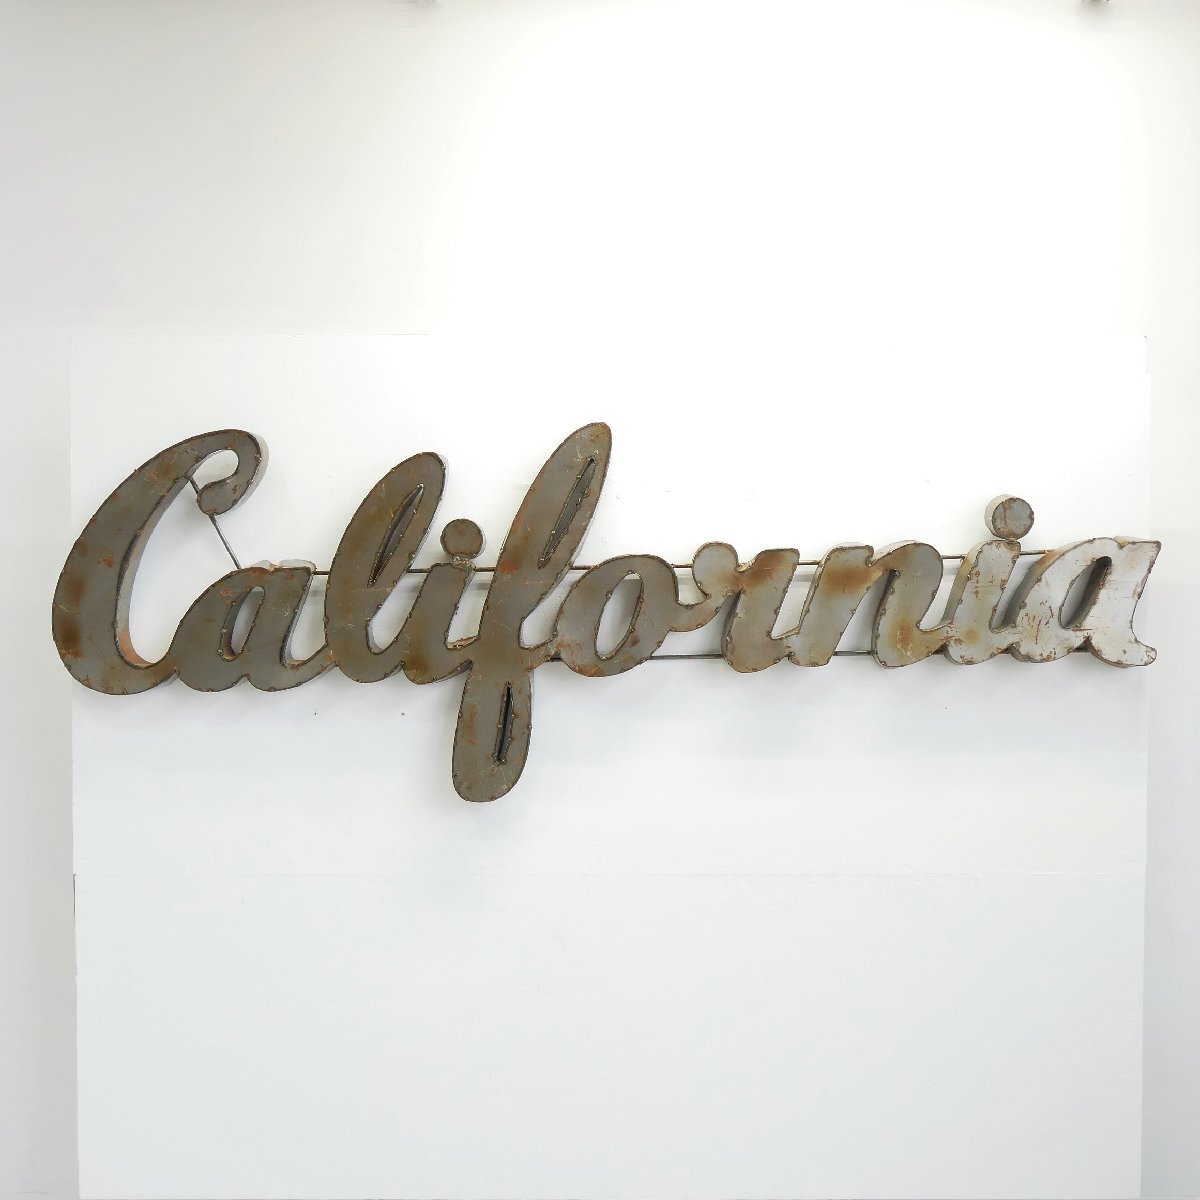 アメリカ カリフォルニア 立体サイン California / ブリキ製 看板 アメリカ西海岸 壁面ディスプレイ 装飾 ジャンクスタイル #502-183-478_画像1